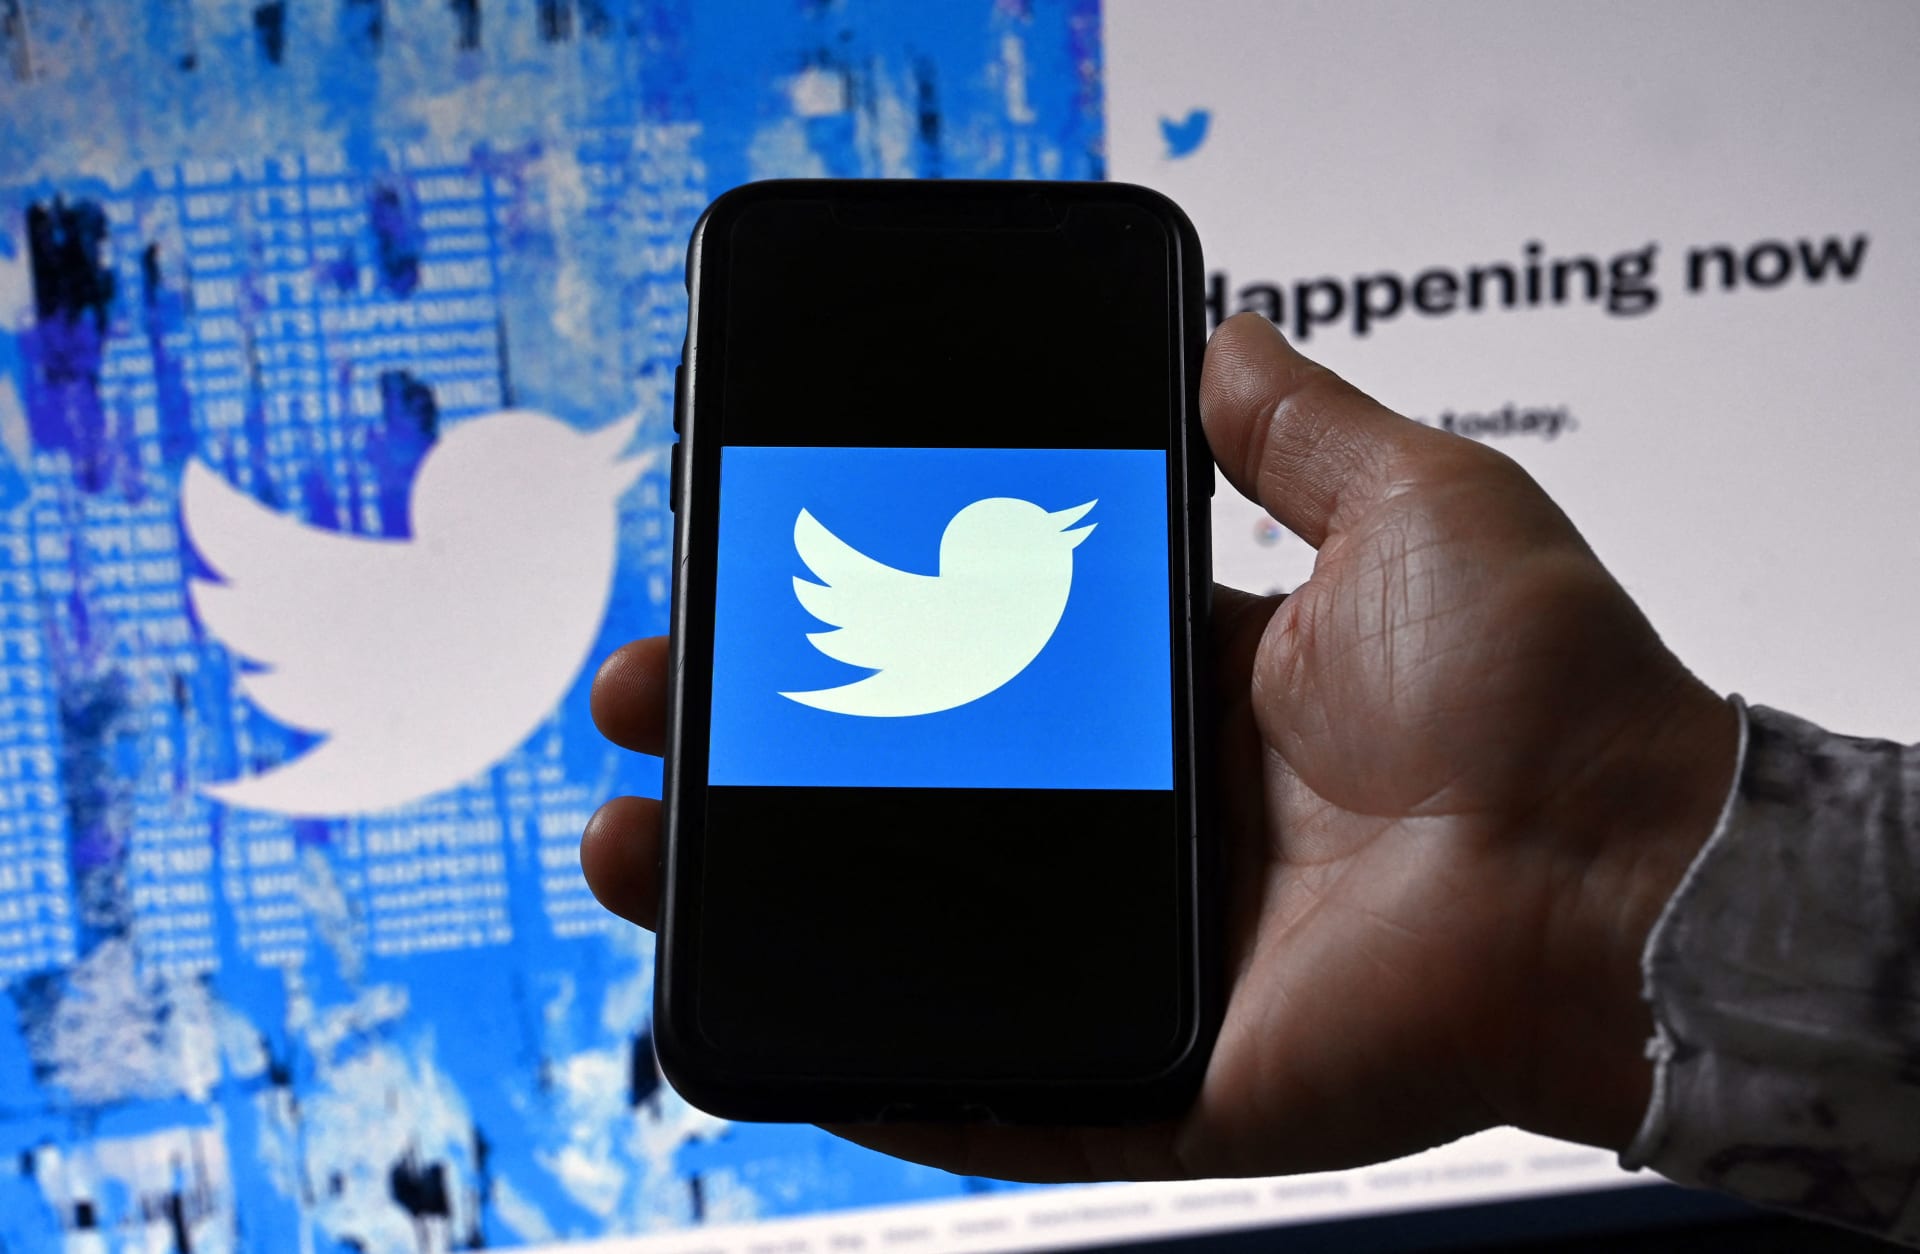 تويتر يُلبي طلب مستخدميه ويكشف عن ميزة جديد بجرس للتنبيه| وخاصية أخرى